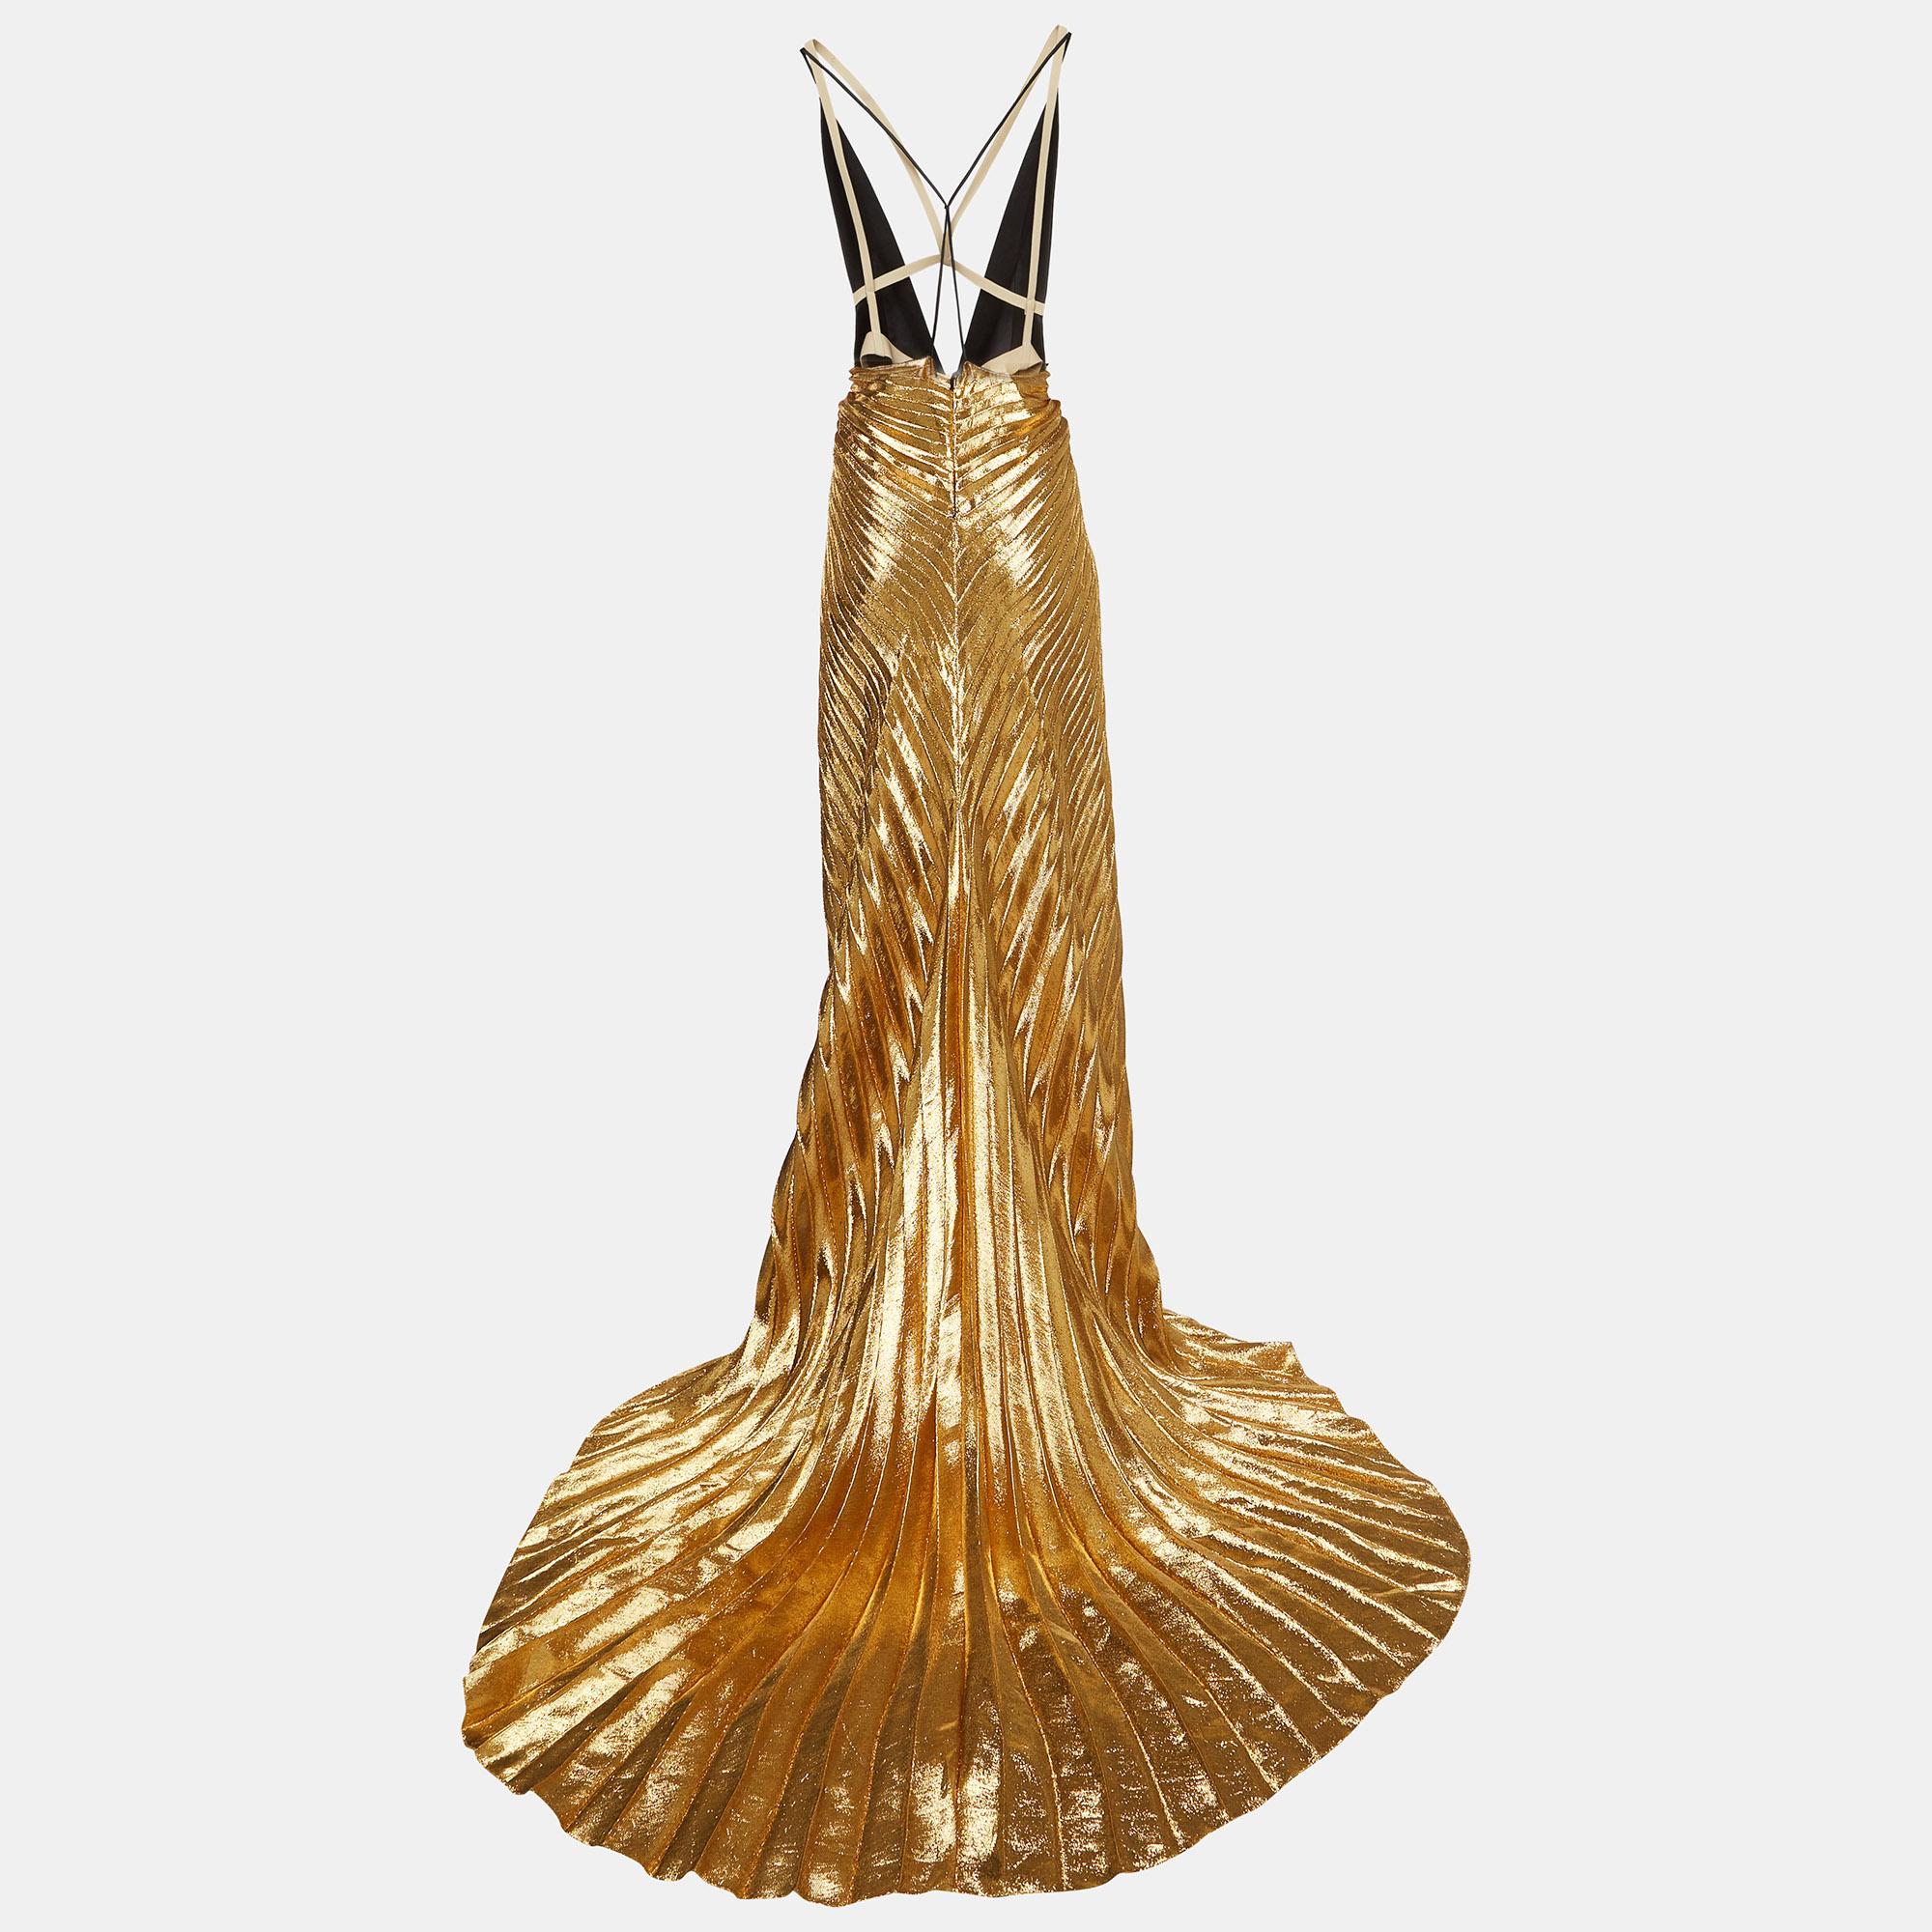 Dieses opulente Kleid von Gucci strahlt mit seinem goldfarbenen Seidensatin und Plissee-Lamé-Stoff Luxus aus. Die fließende Silhouette erhält durch das raffinierte Hosenträger-Detail einen Hauch von kantiger Eleganz. Perfekt, um bei glamourösen